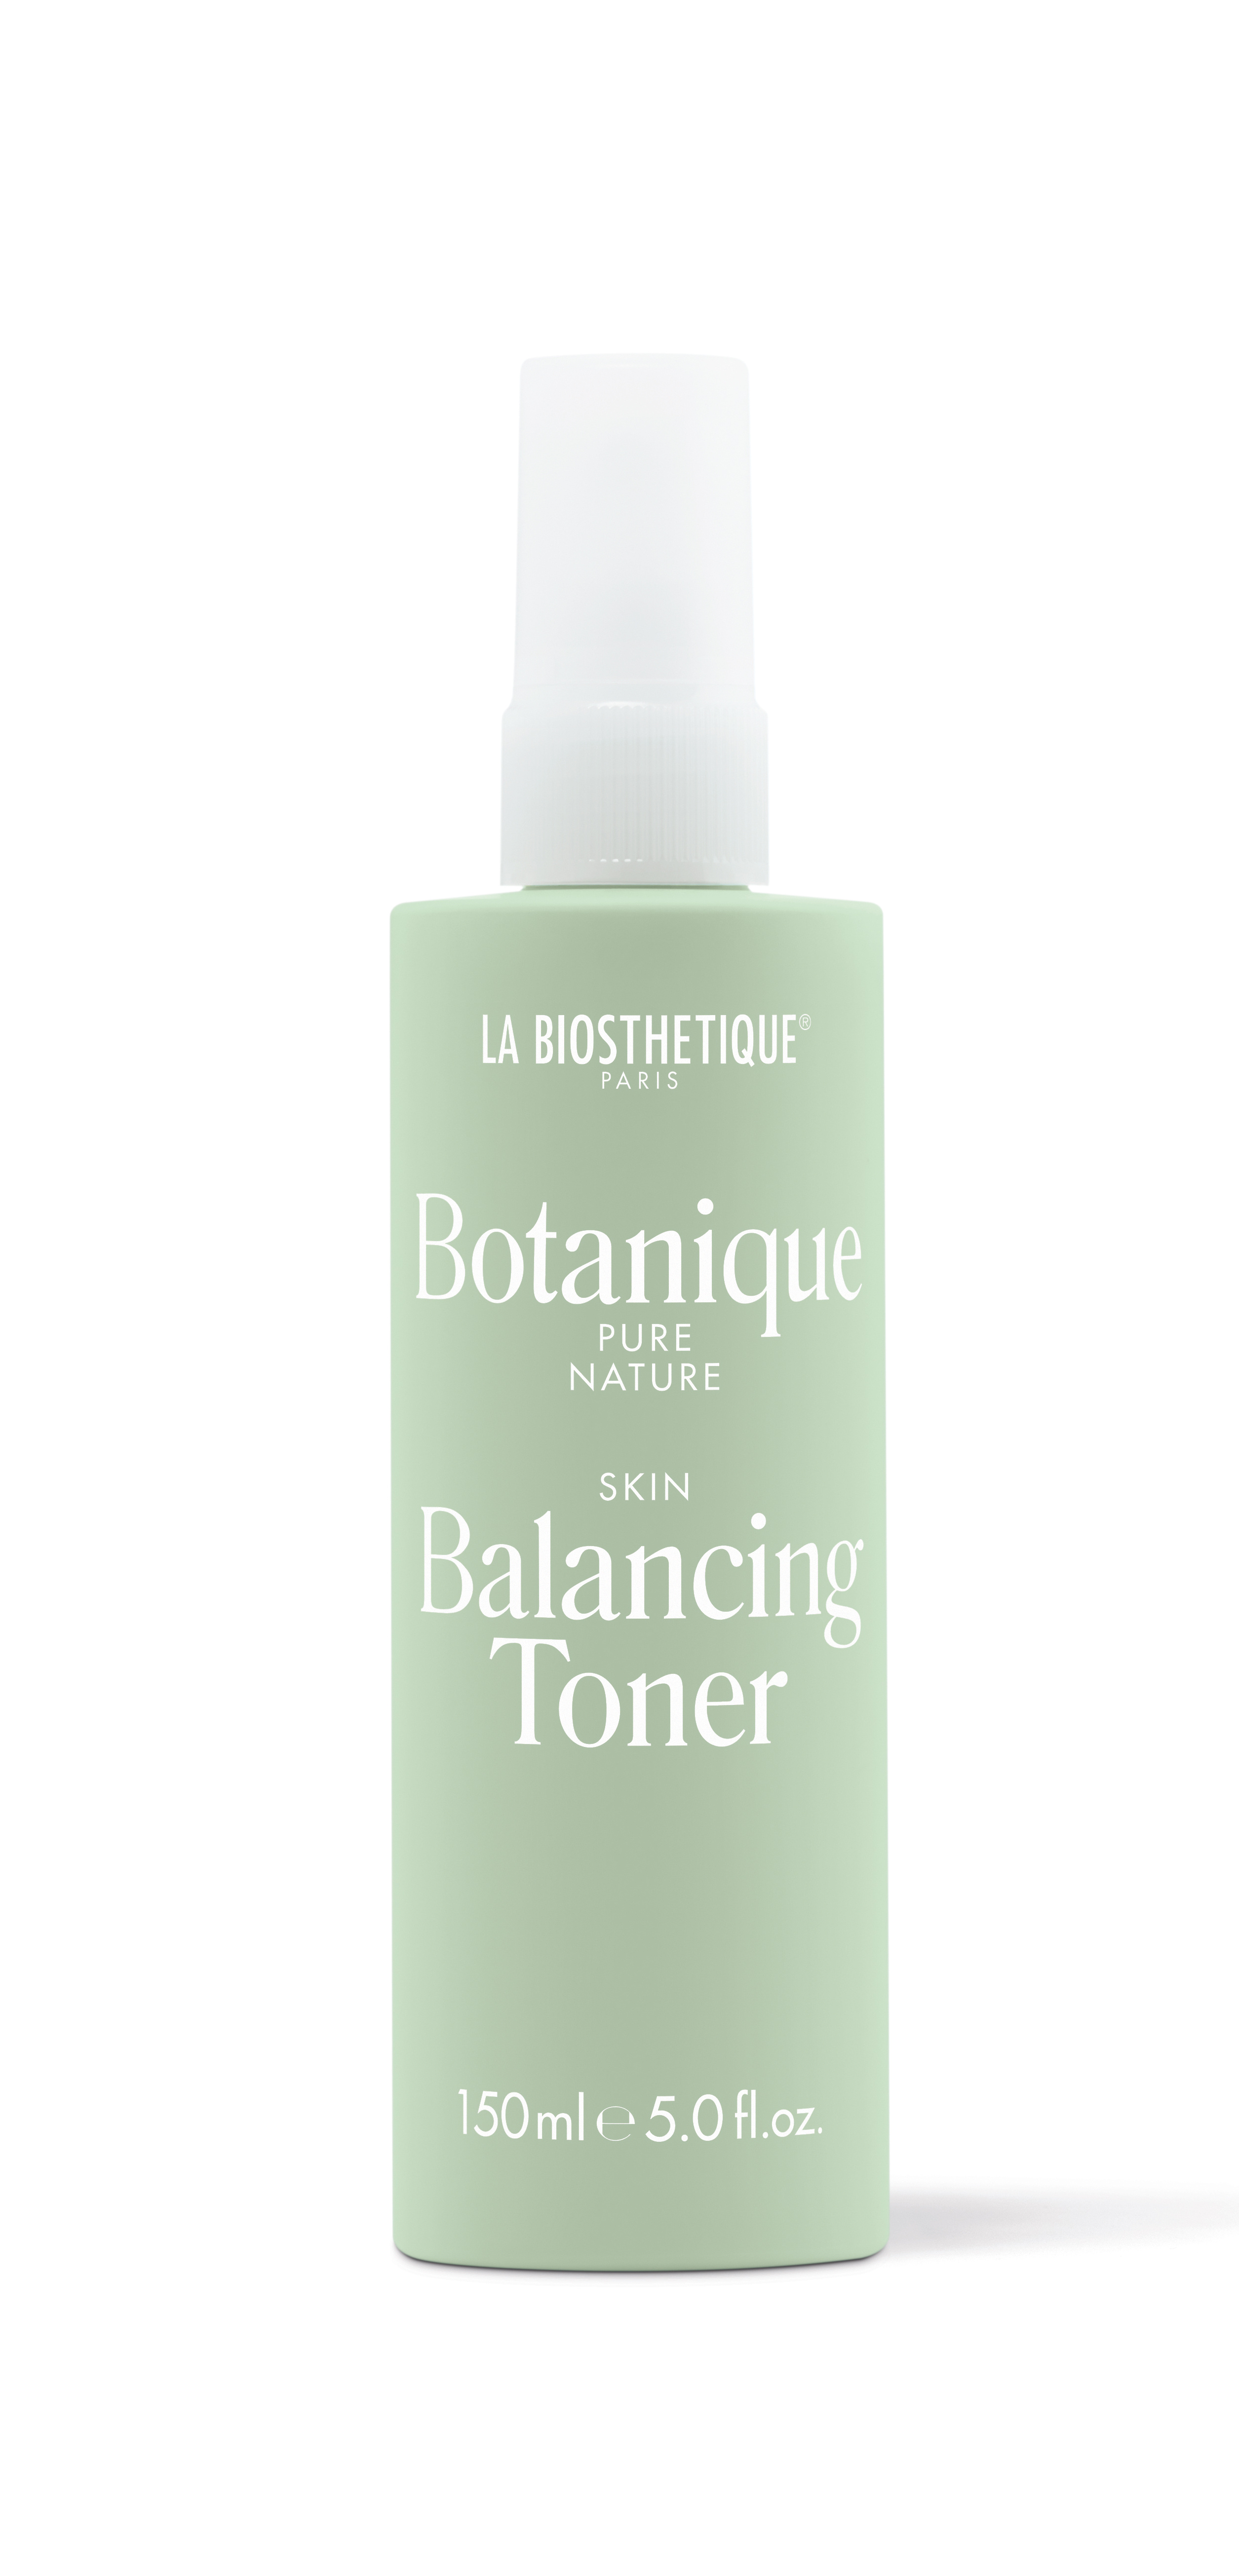 Botanique Pure Nature Balancing Toner for Skin Care by LA BIOSTHETIQUE PARIS